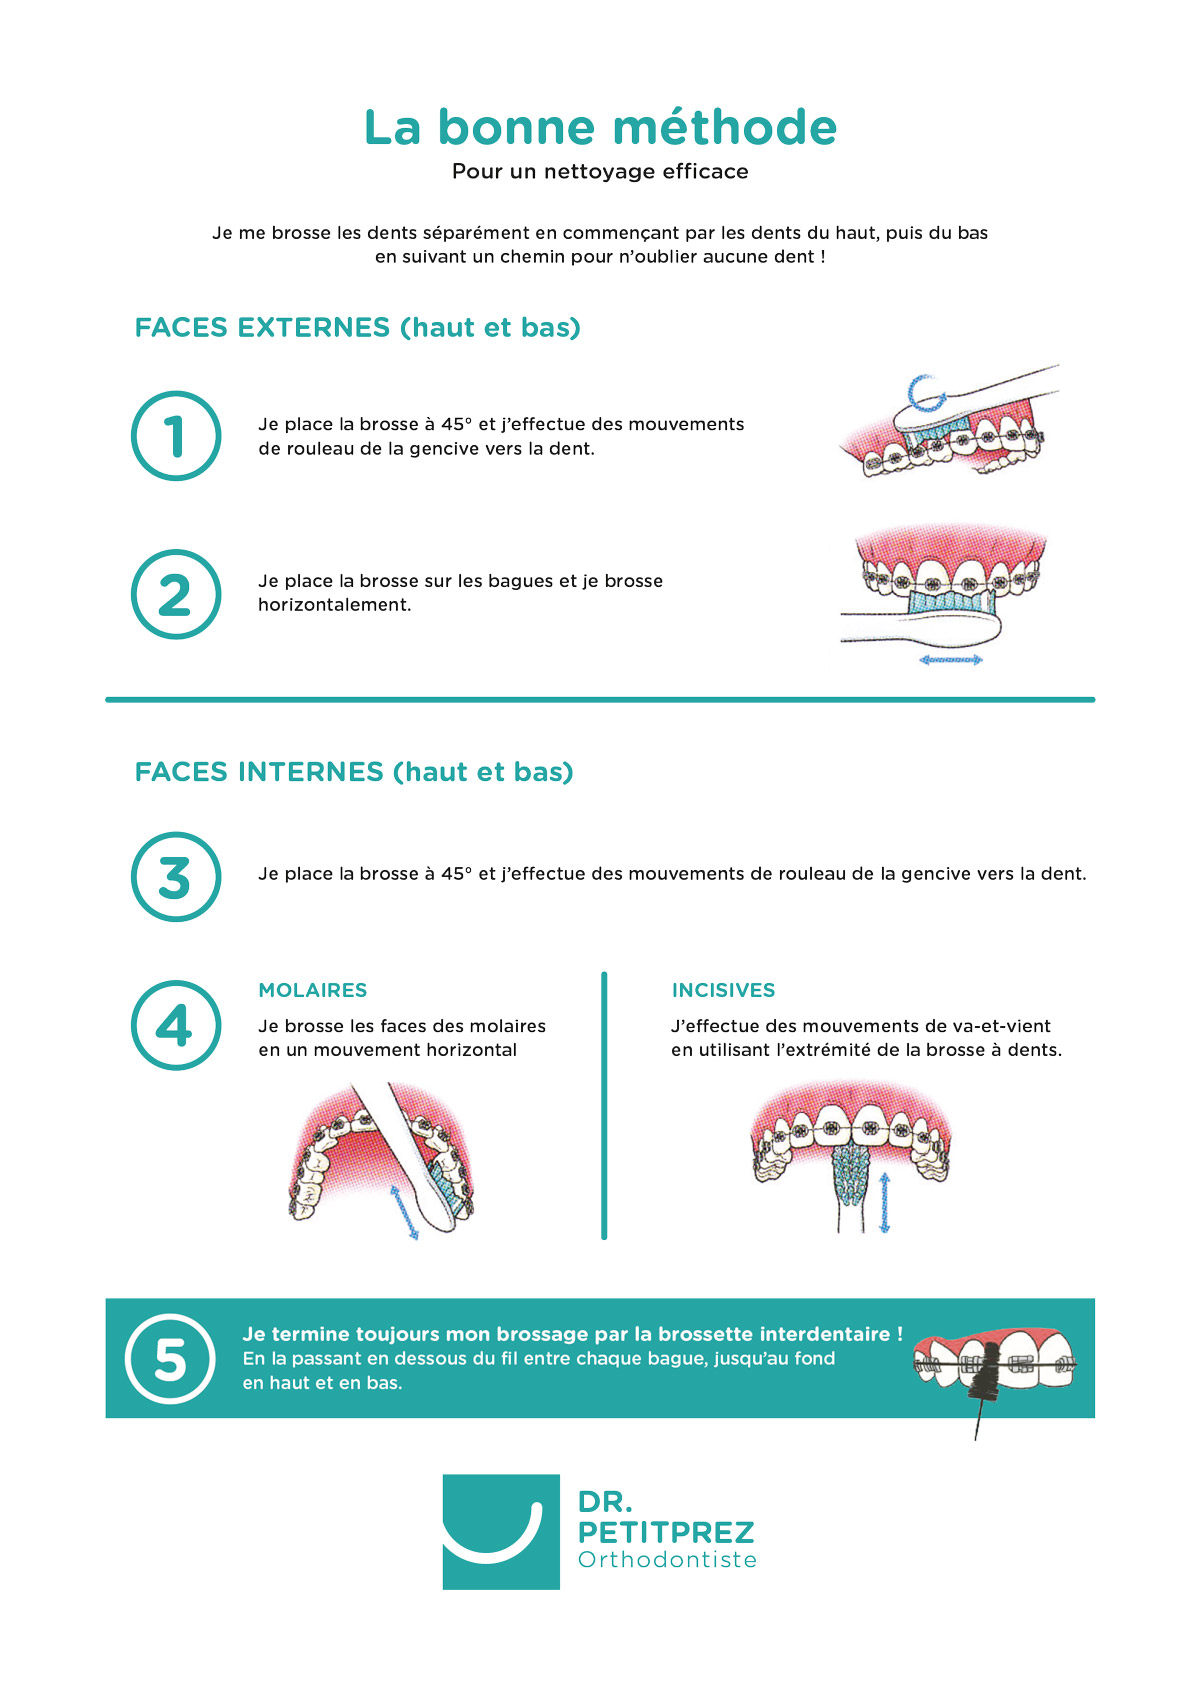 La bonne méthode pour se brosser les dents - Docteur Petitprez - Orthodontiste à Estaires.